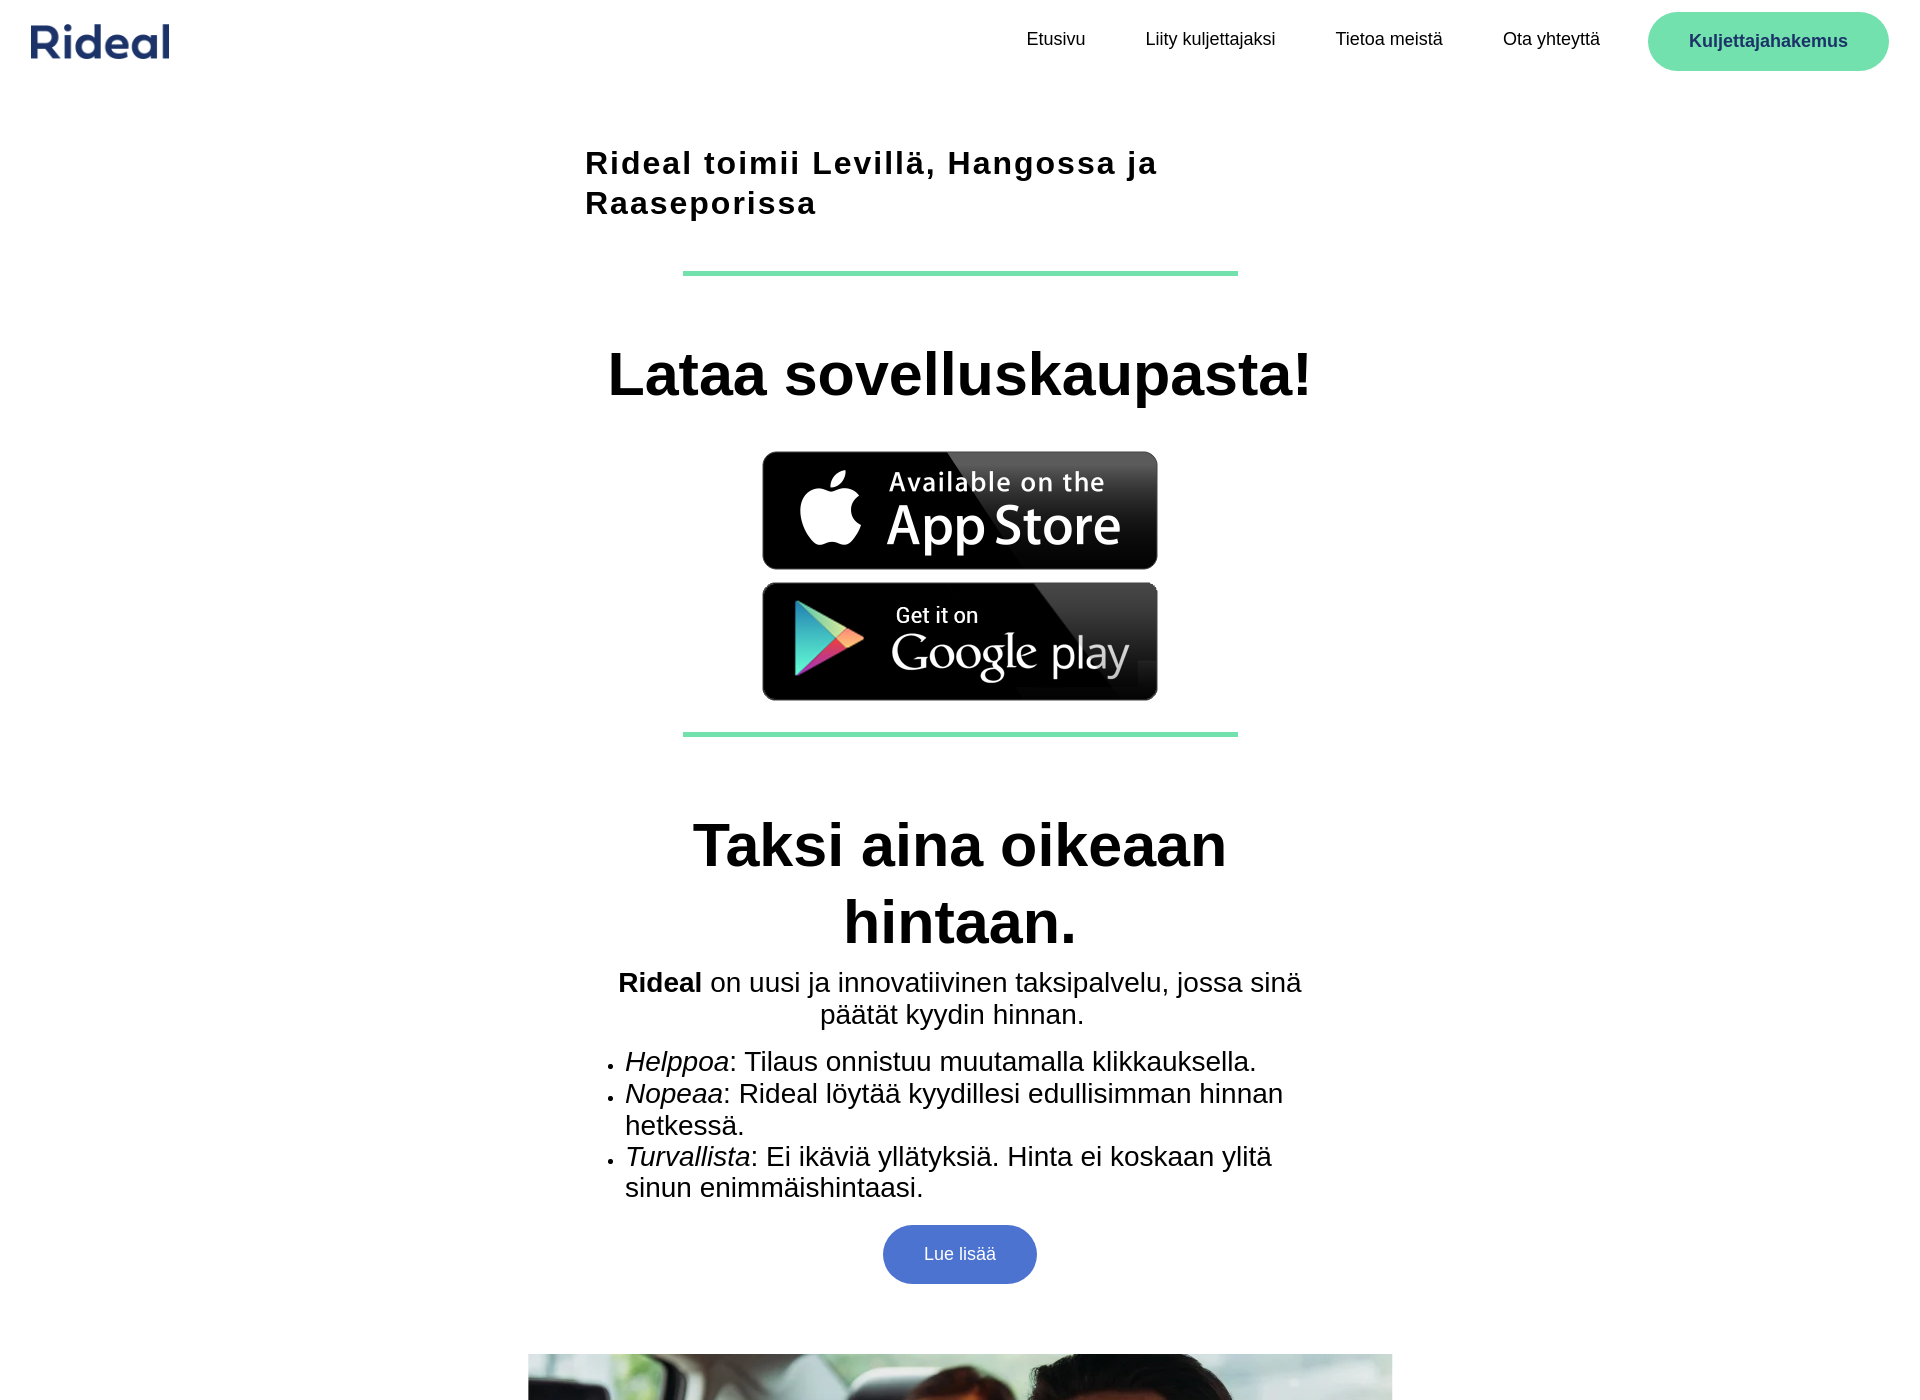 Näyttökuva rideal.fi